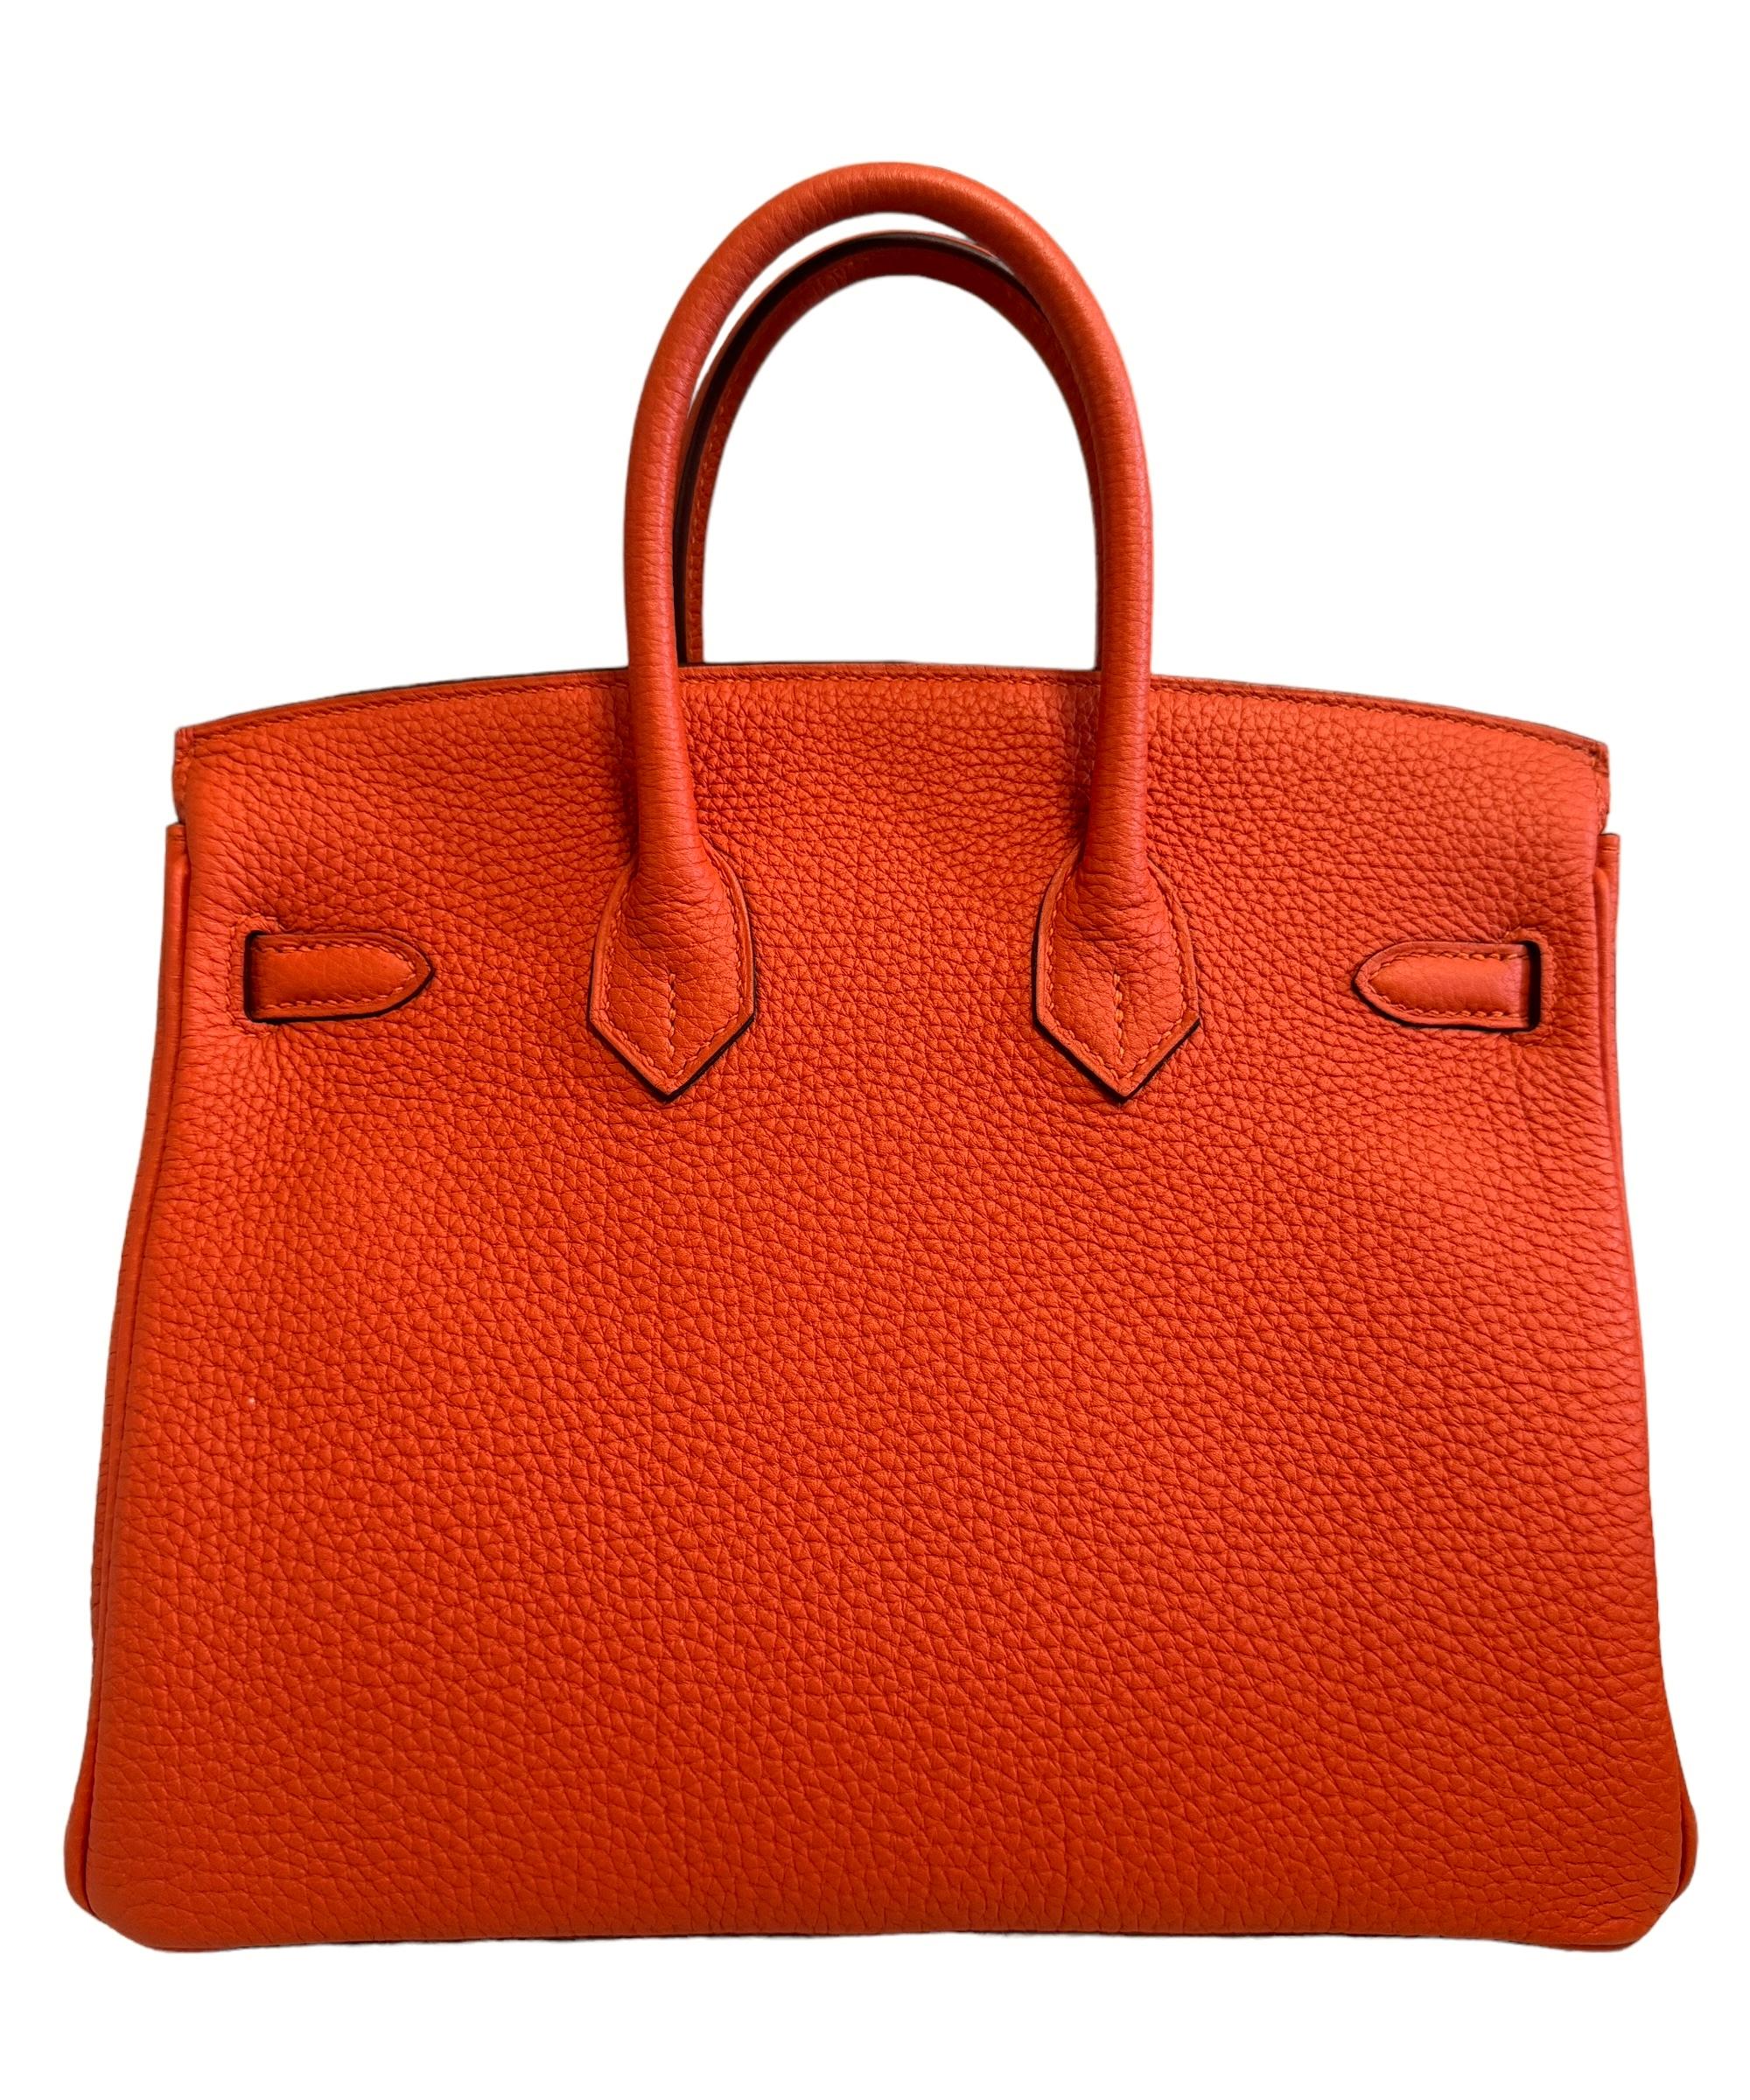 Hermes Birkin 25 Poppy Orange Togo Handbag Bag Palladium Hardware In Excellent Condition For Sale In Miami, FL